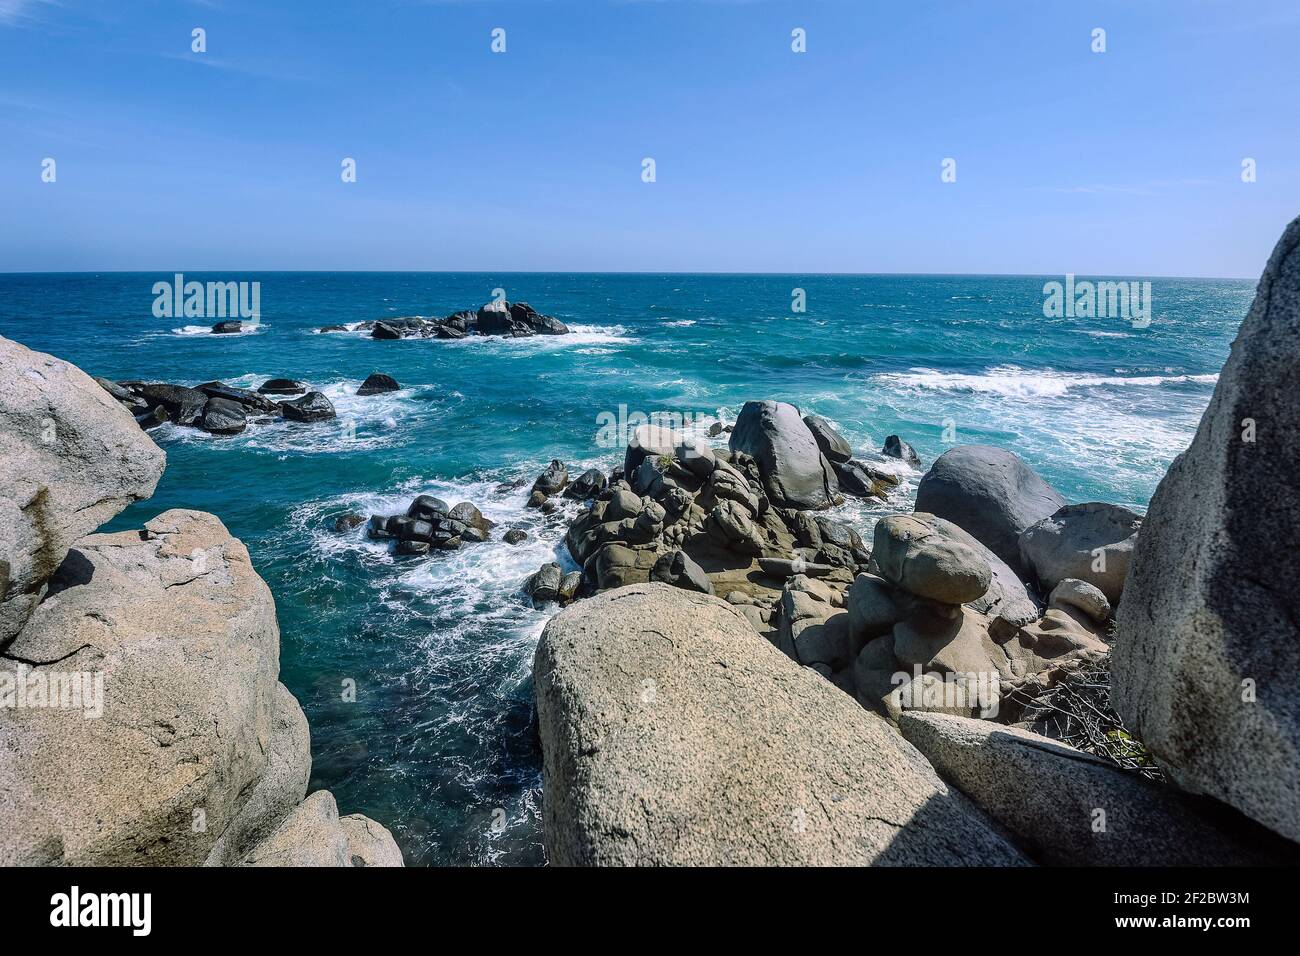 Türkis blau Karibik Wasser und Felsen schöne Tapete Hintergrund Landschaft Bild. Tiefblaue Meerwasserlandschaft Stockfoto